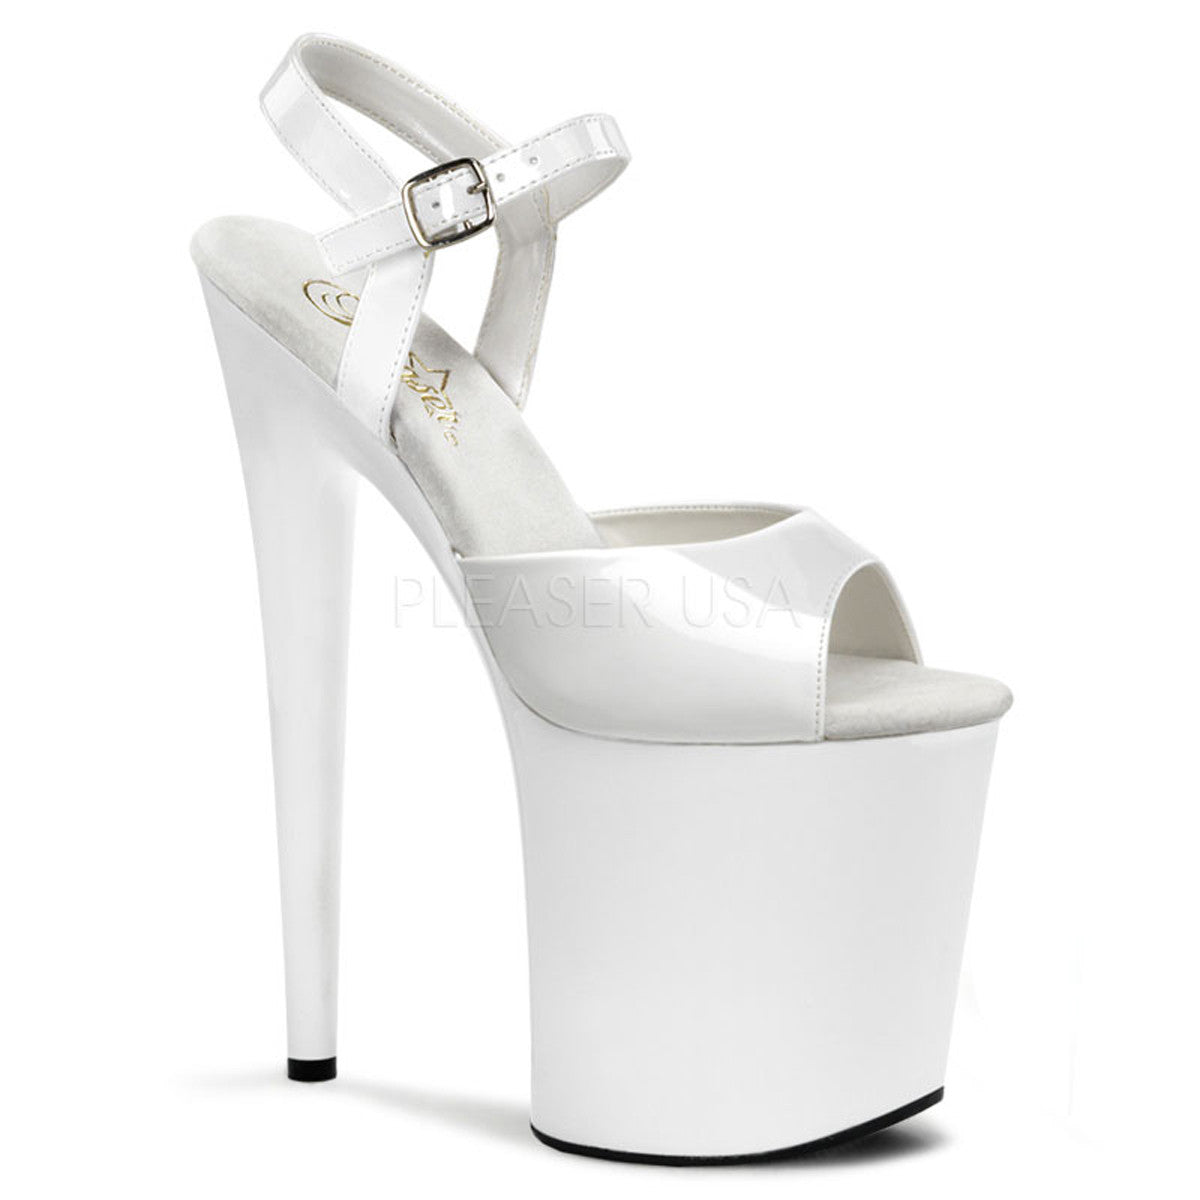 PLEASER FLAMINGO-809 White Ankle Strap Sandals - Shoecup.com - 1